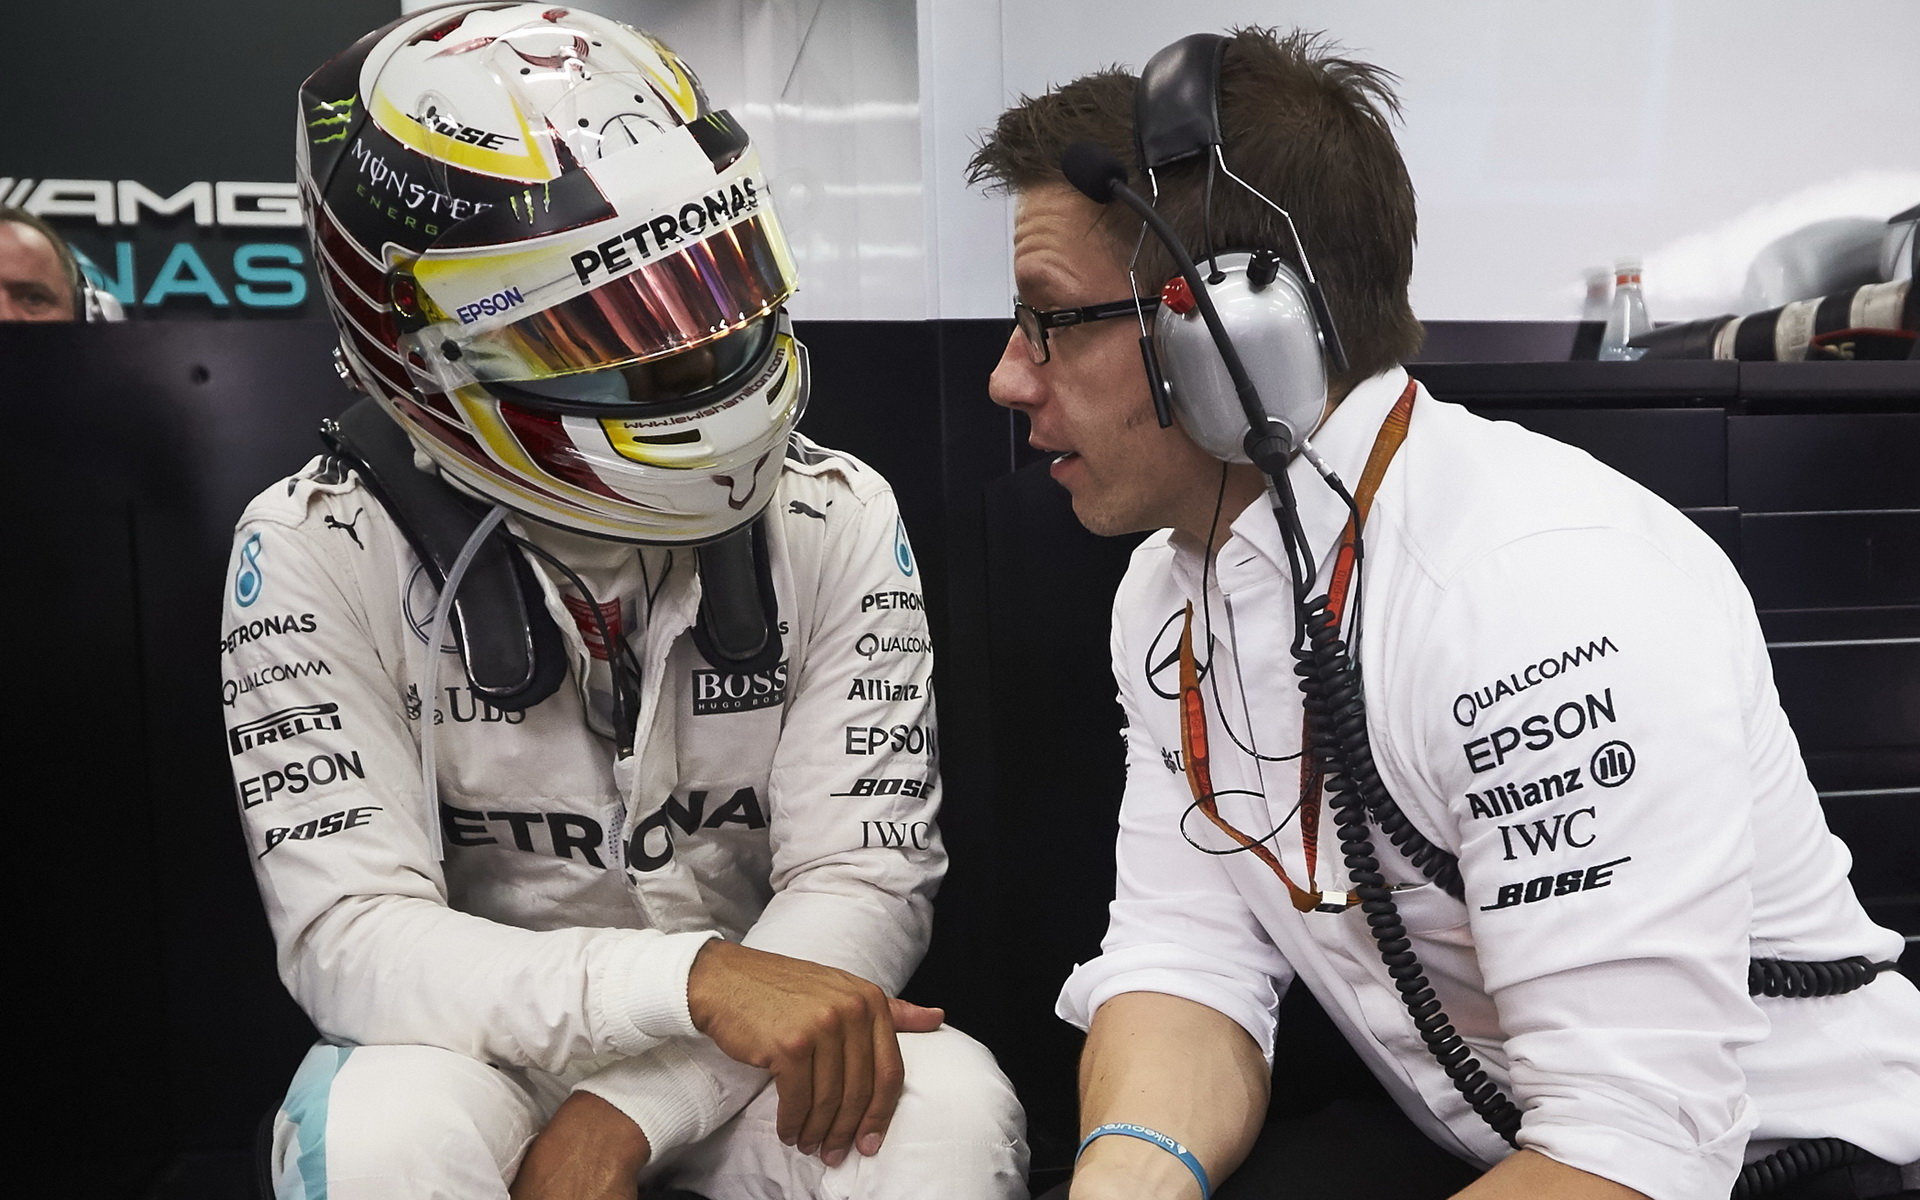 Lewis Hamilton nenastoupil k testům kvůli přesně nespecifikovaným potížím s nohou